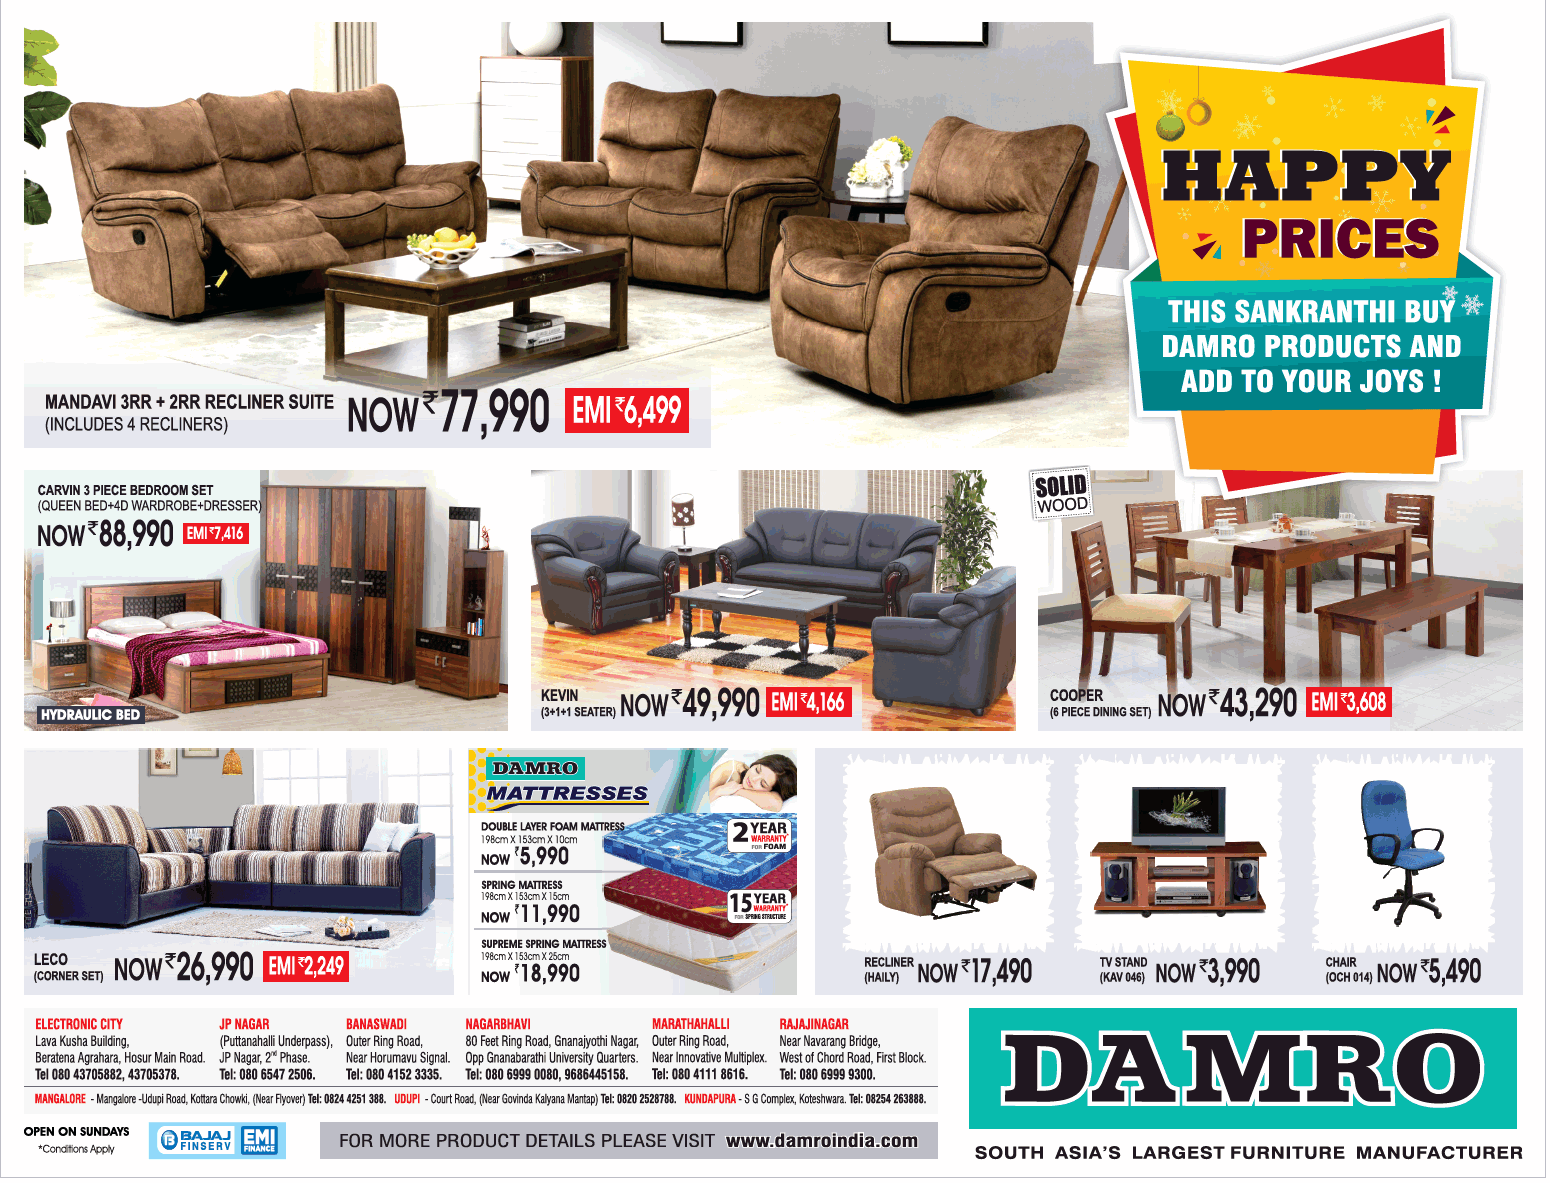 damro furniture mattress prices